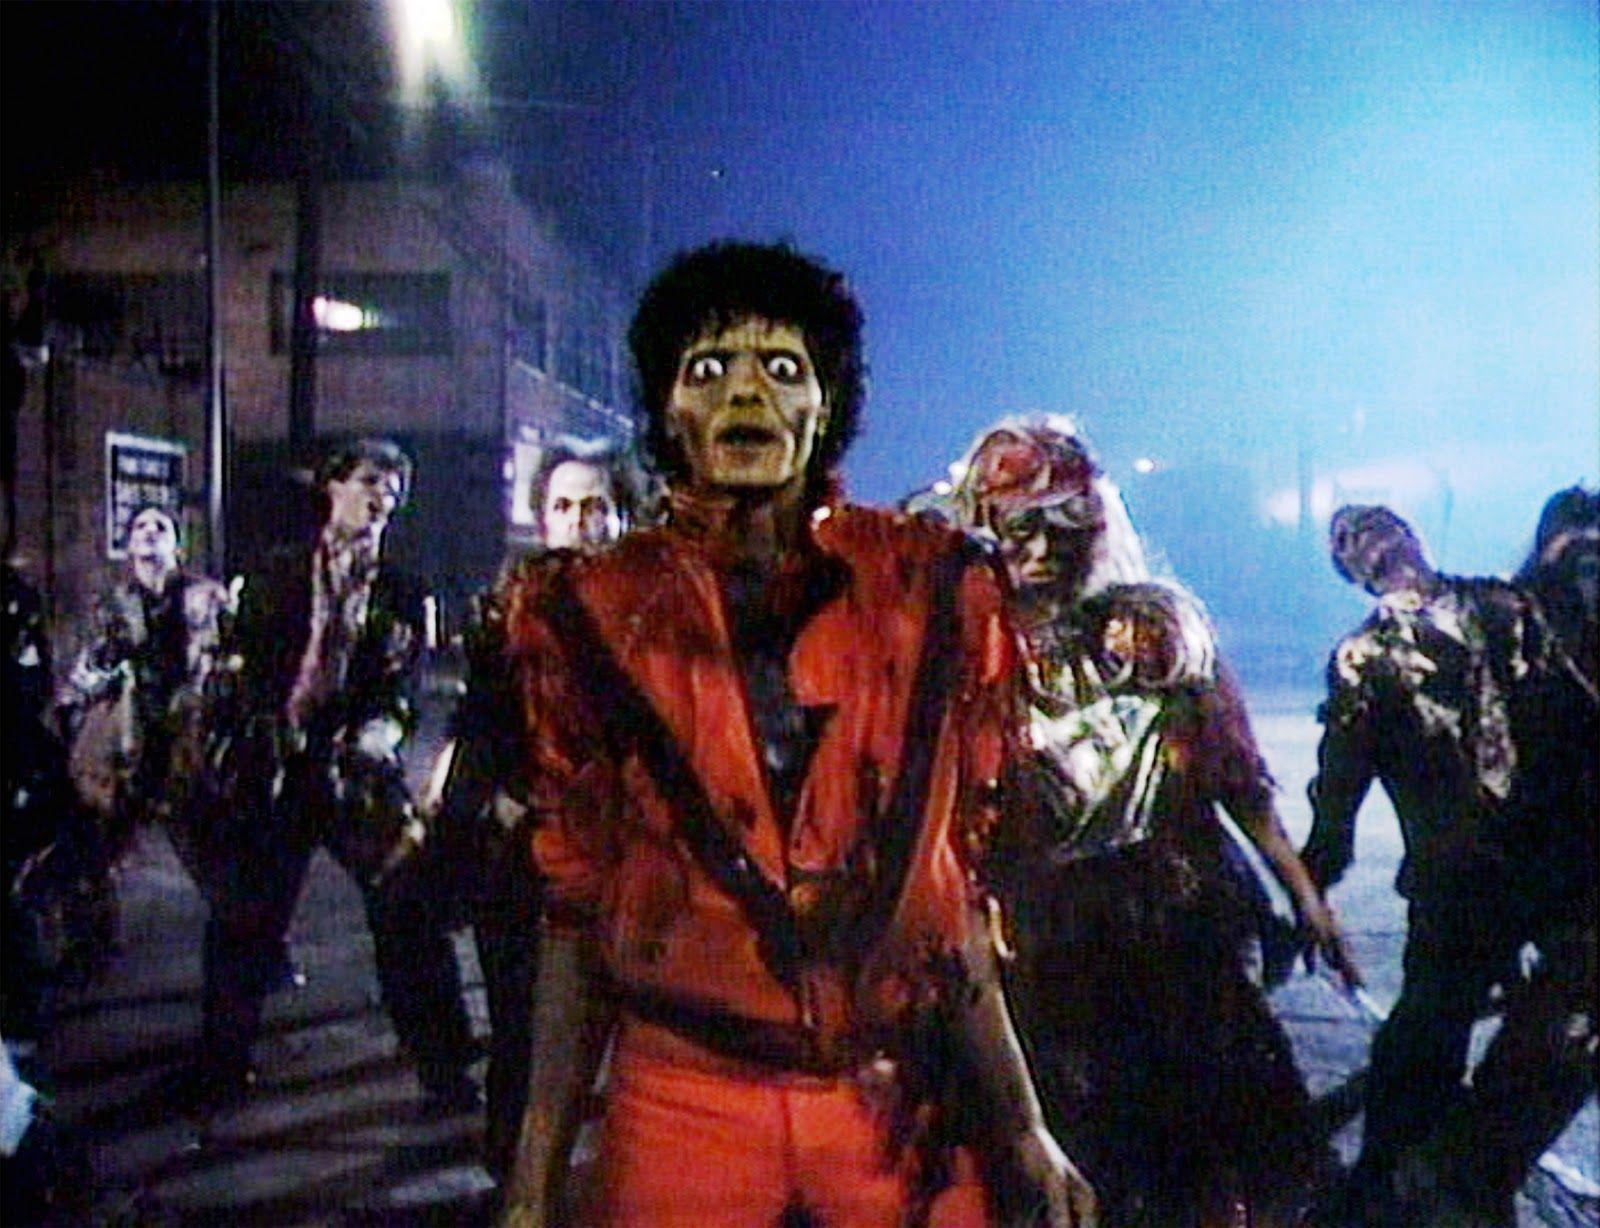 Michael Jackson Thriller Dance Widescreen 2 HD Wallpaper